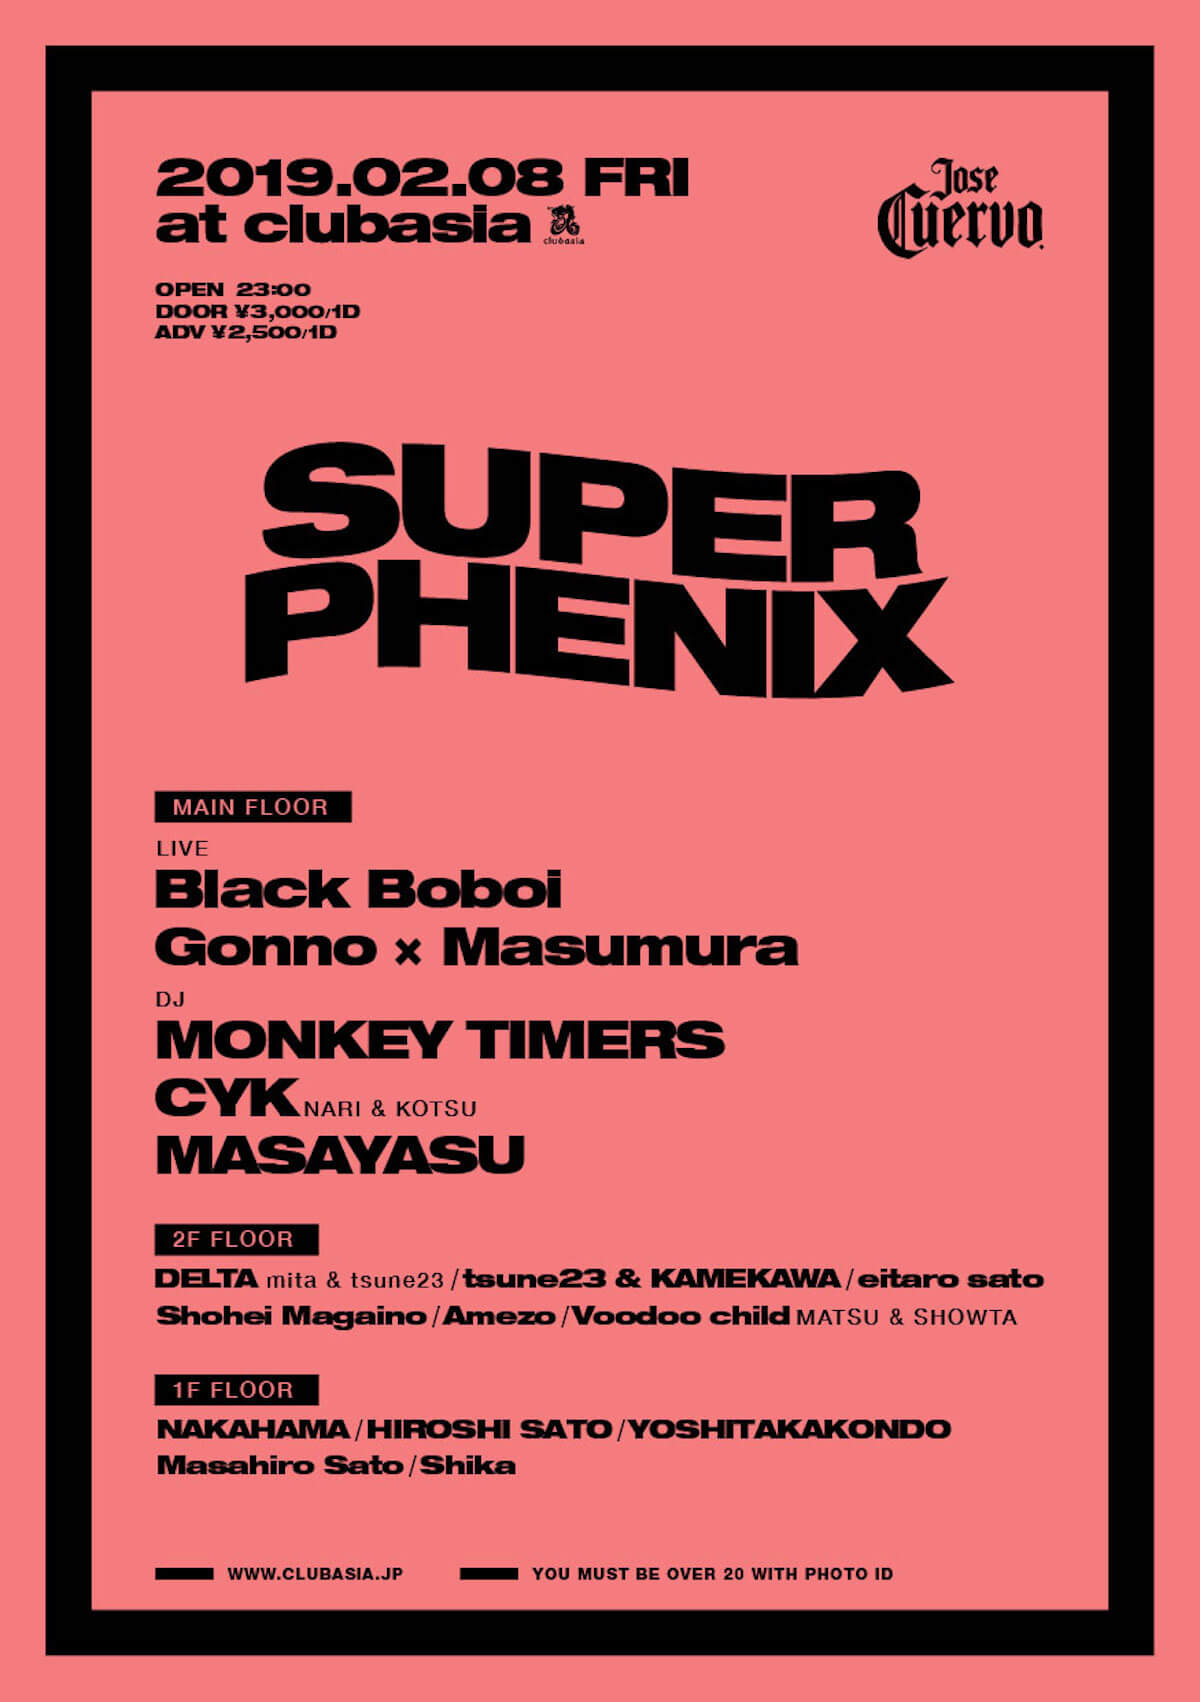 タイムテーブル発表！Black BoboiやCYK、MONKEY TIMERSら出演のニューパーティー＜SUPER PHENIX＞ mu190201_clubasia